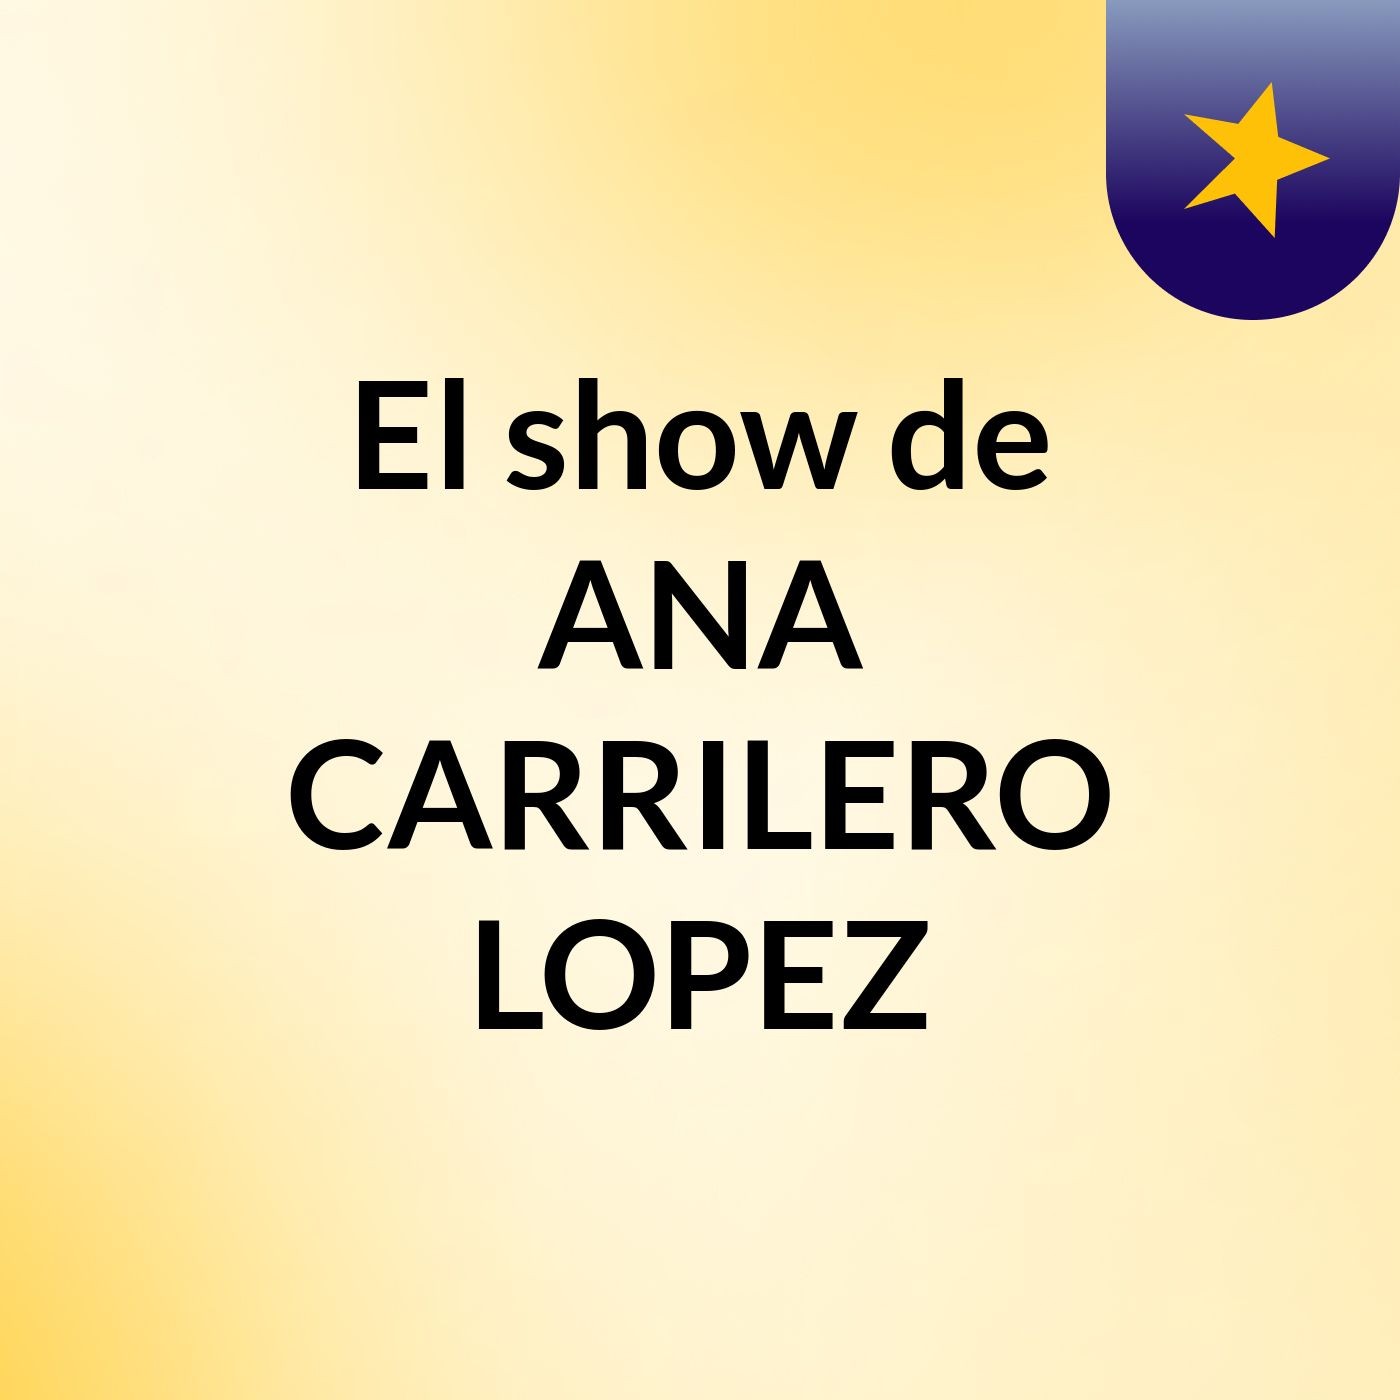 Episodio 1 - El show de ANA CARRILERO LOPEZ